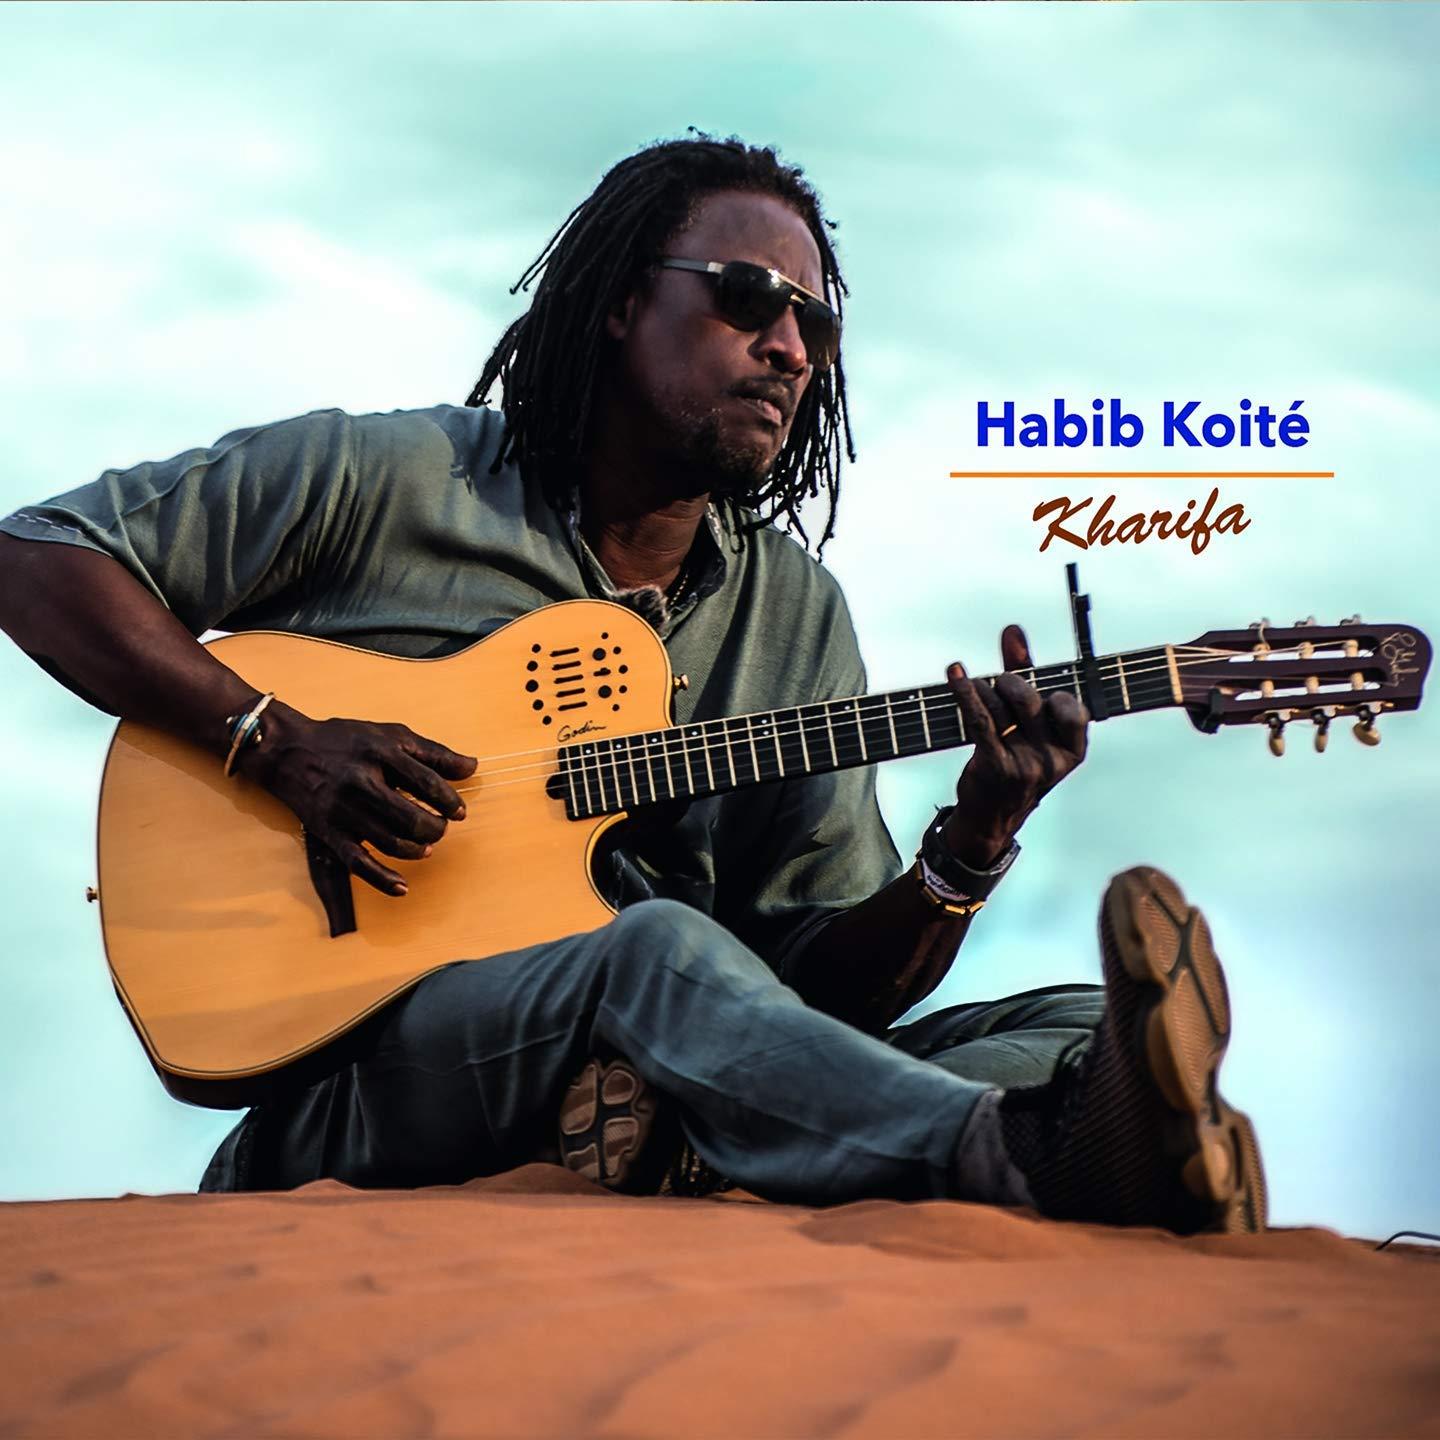 HABIB KOITE - Kharifa